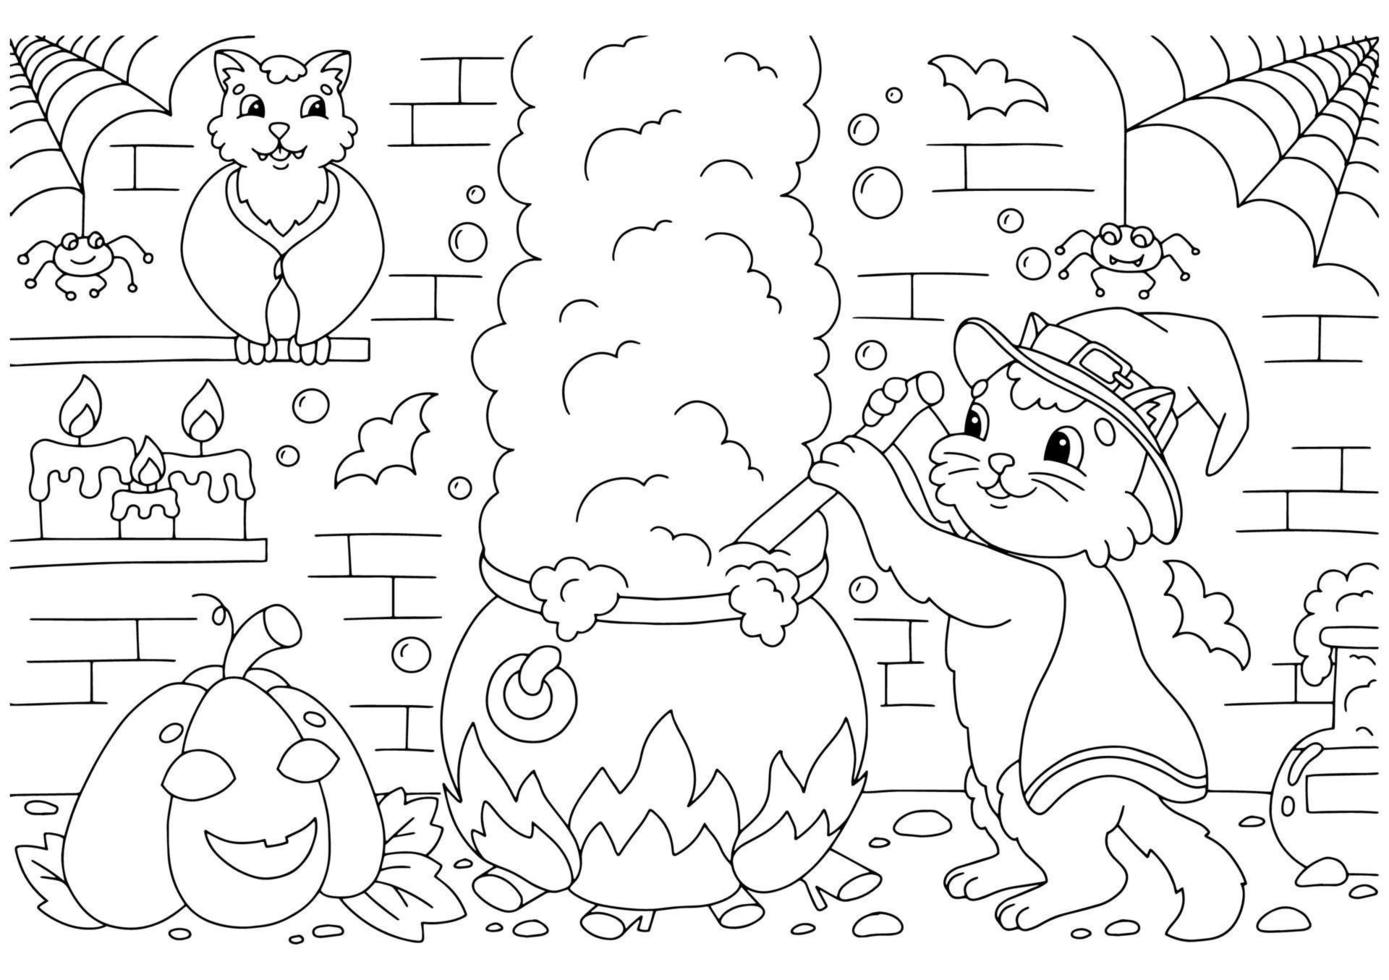 le chat prépare une potion dans le donjon dans un grand chaudron. page de livre de coloriage pour les enfants. personnage de style dessin animé. illustration vectorielle isolée sur fond blanc. vecteur